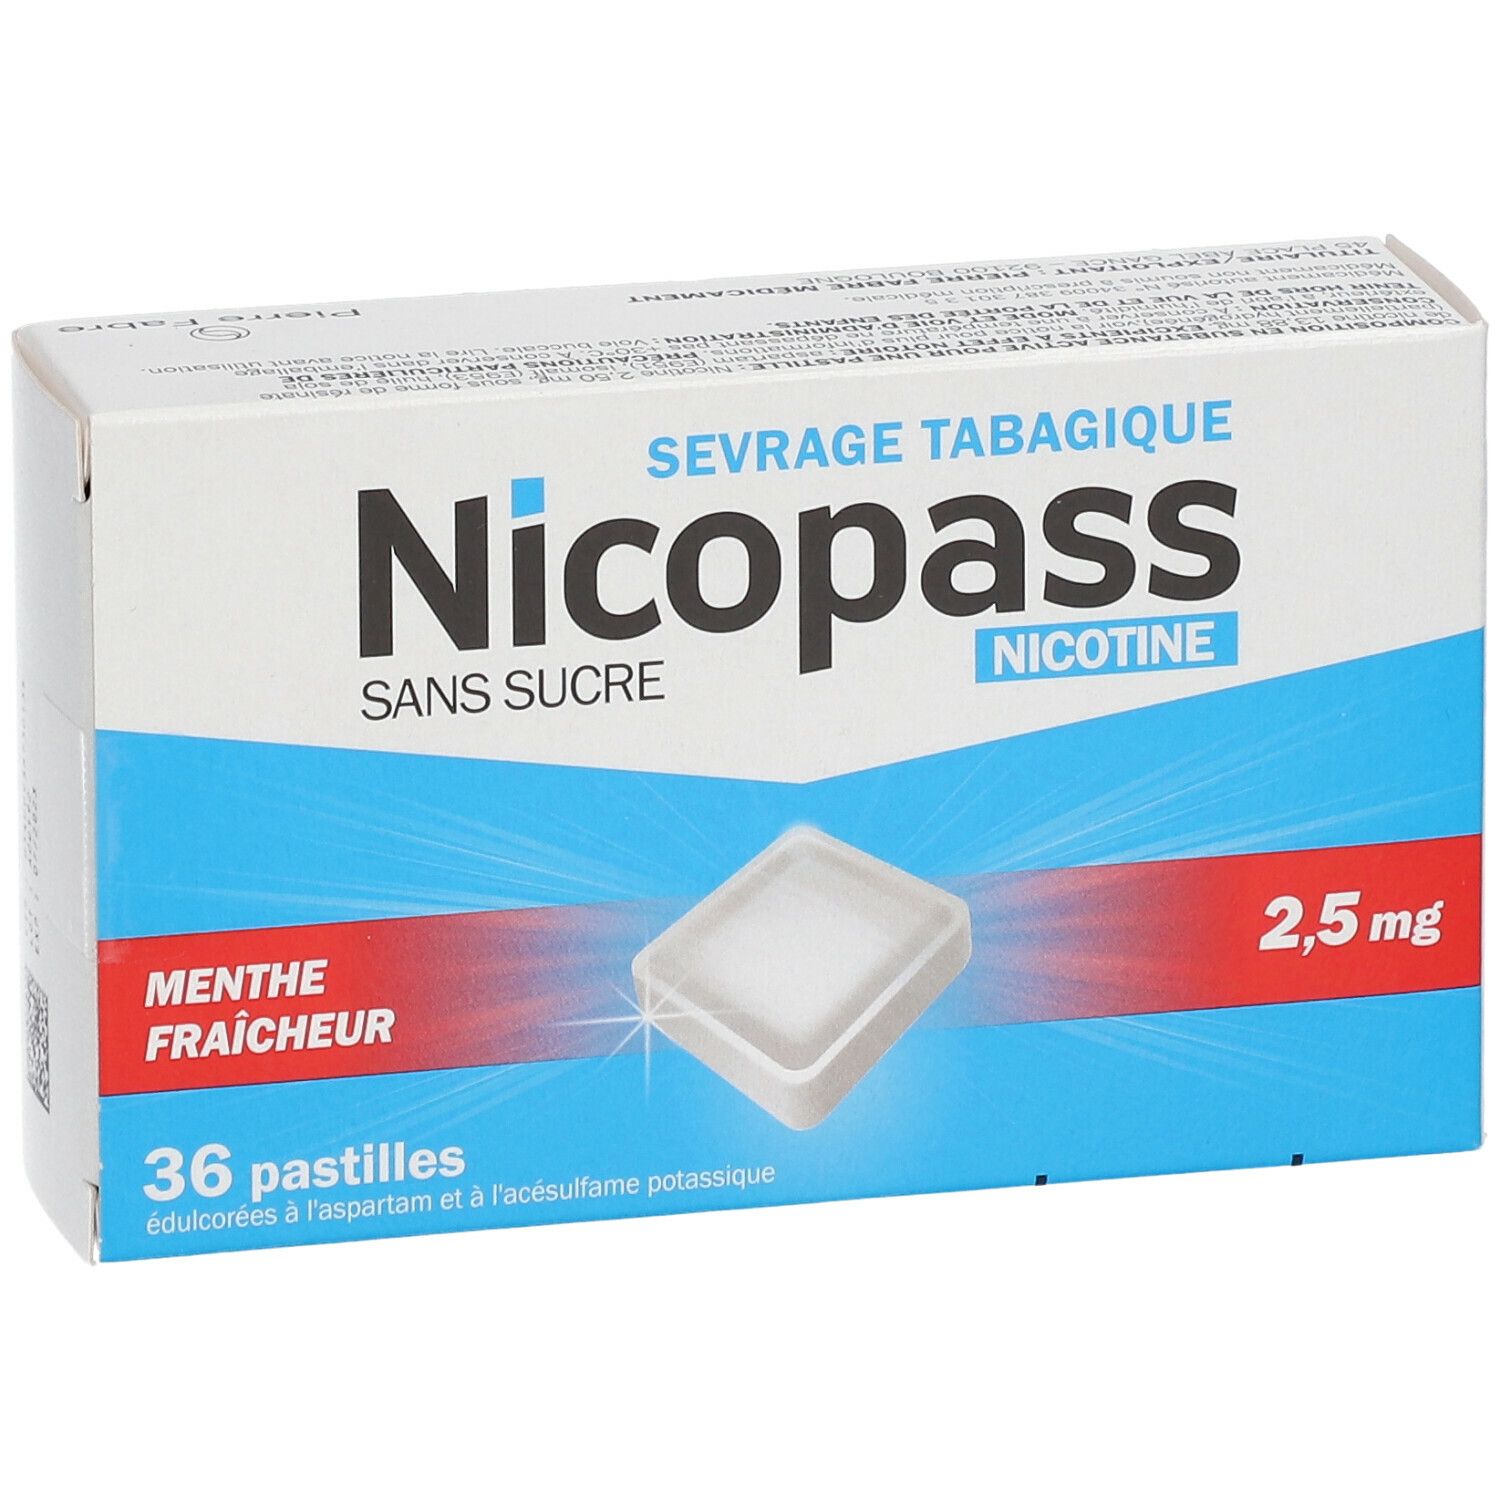 Nicopass® Menthe fraicheur s/s 2,5 mg